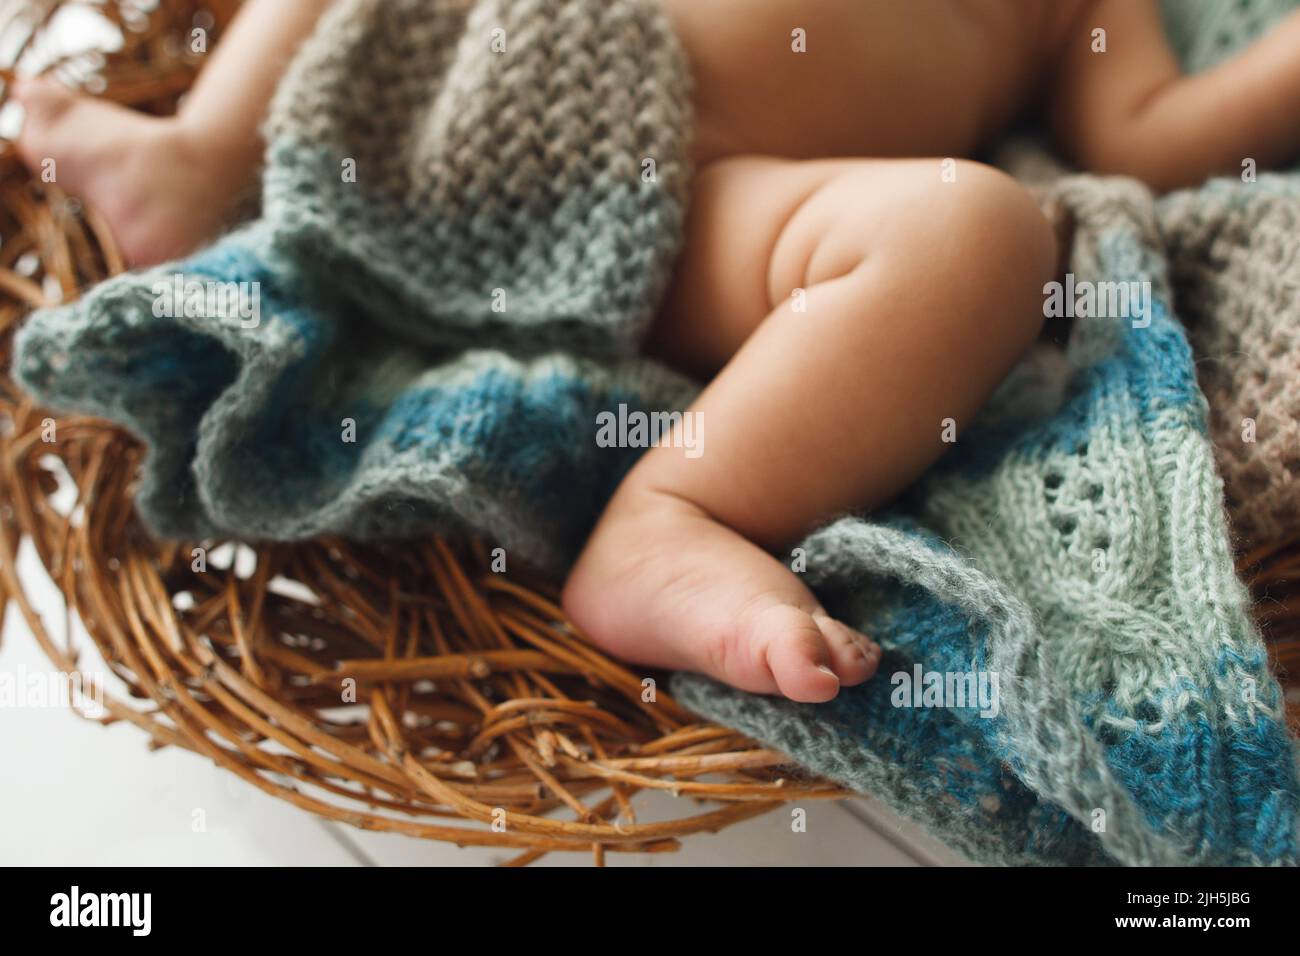 Pieds de bébé allongé sur un berceau en osier en gros plan Banque D'Images